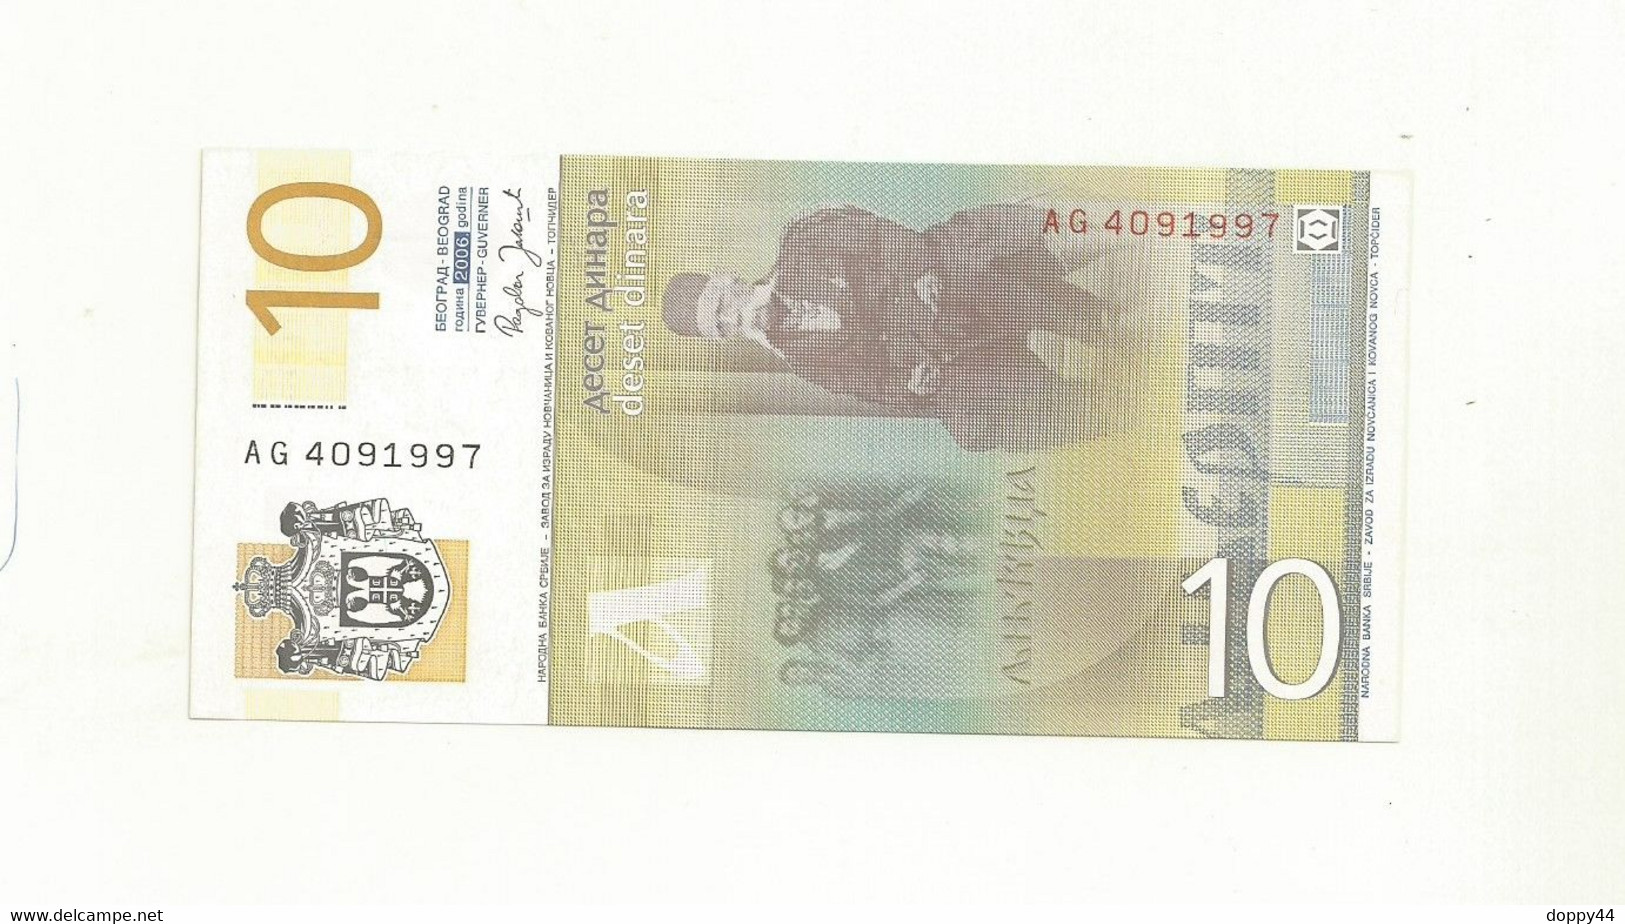 BILLET NEUF SERBIE 10 DINAR EMIS EN 2006. - Serbia